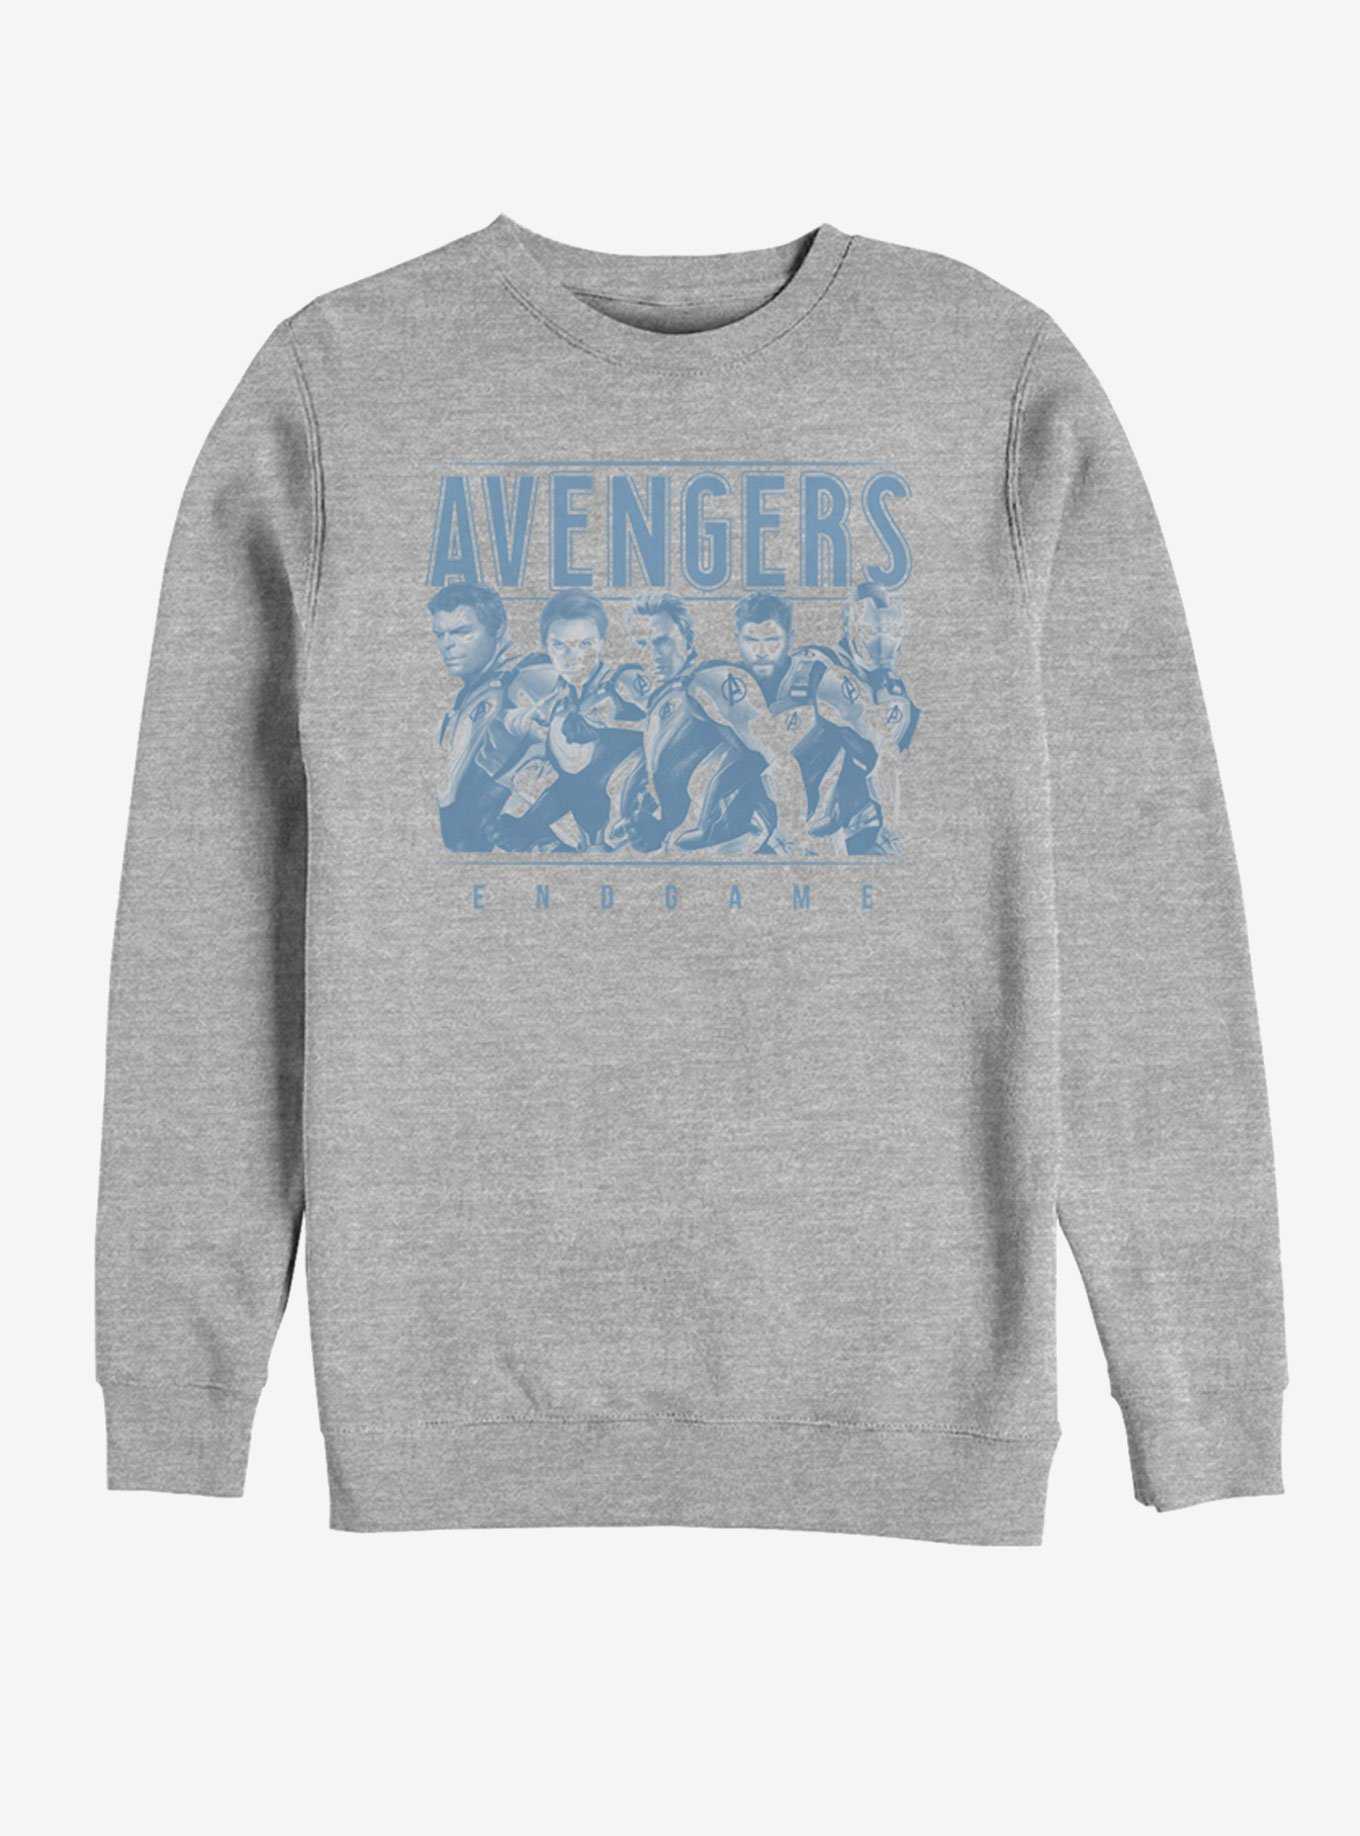 Marvel Avengers: Endgame Avenger Endgame Group Sweatshirt, , hi-res